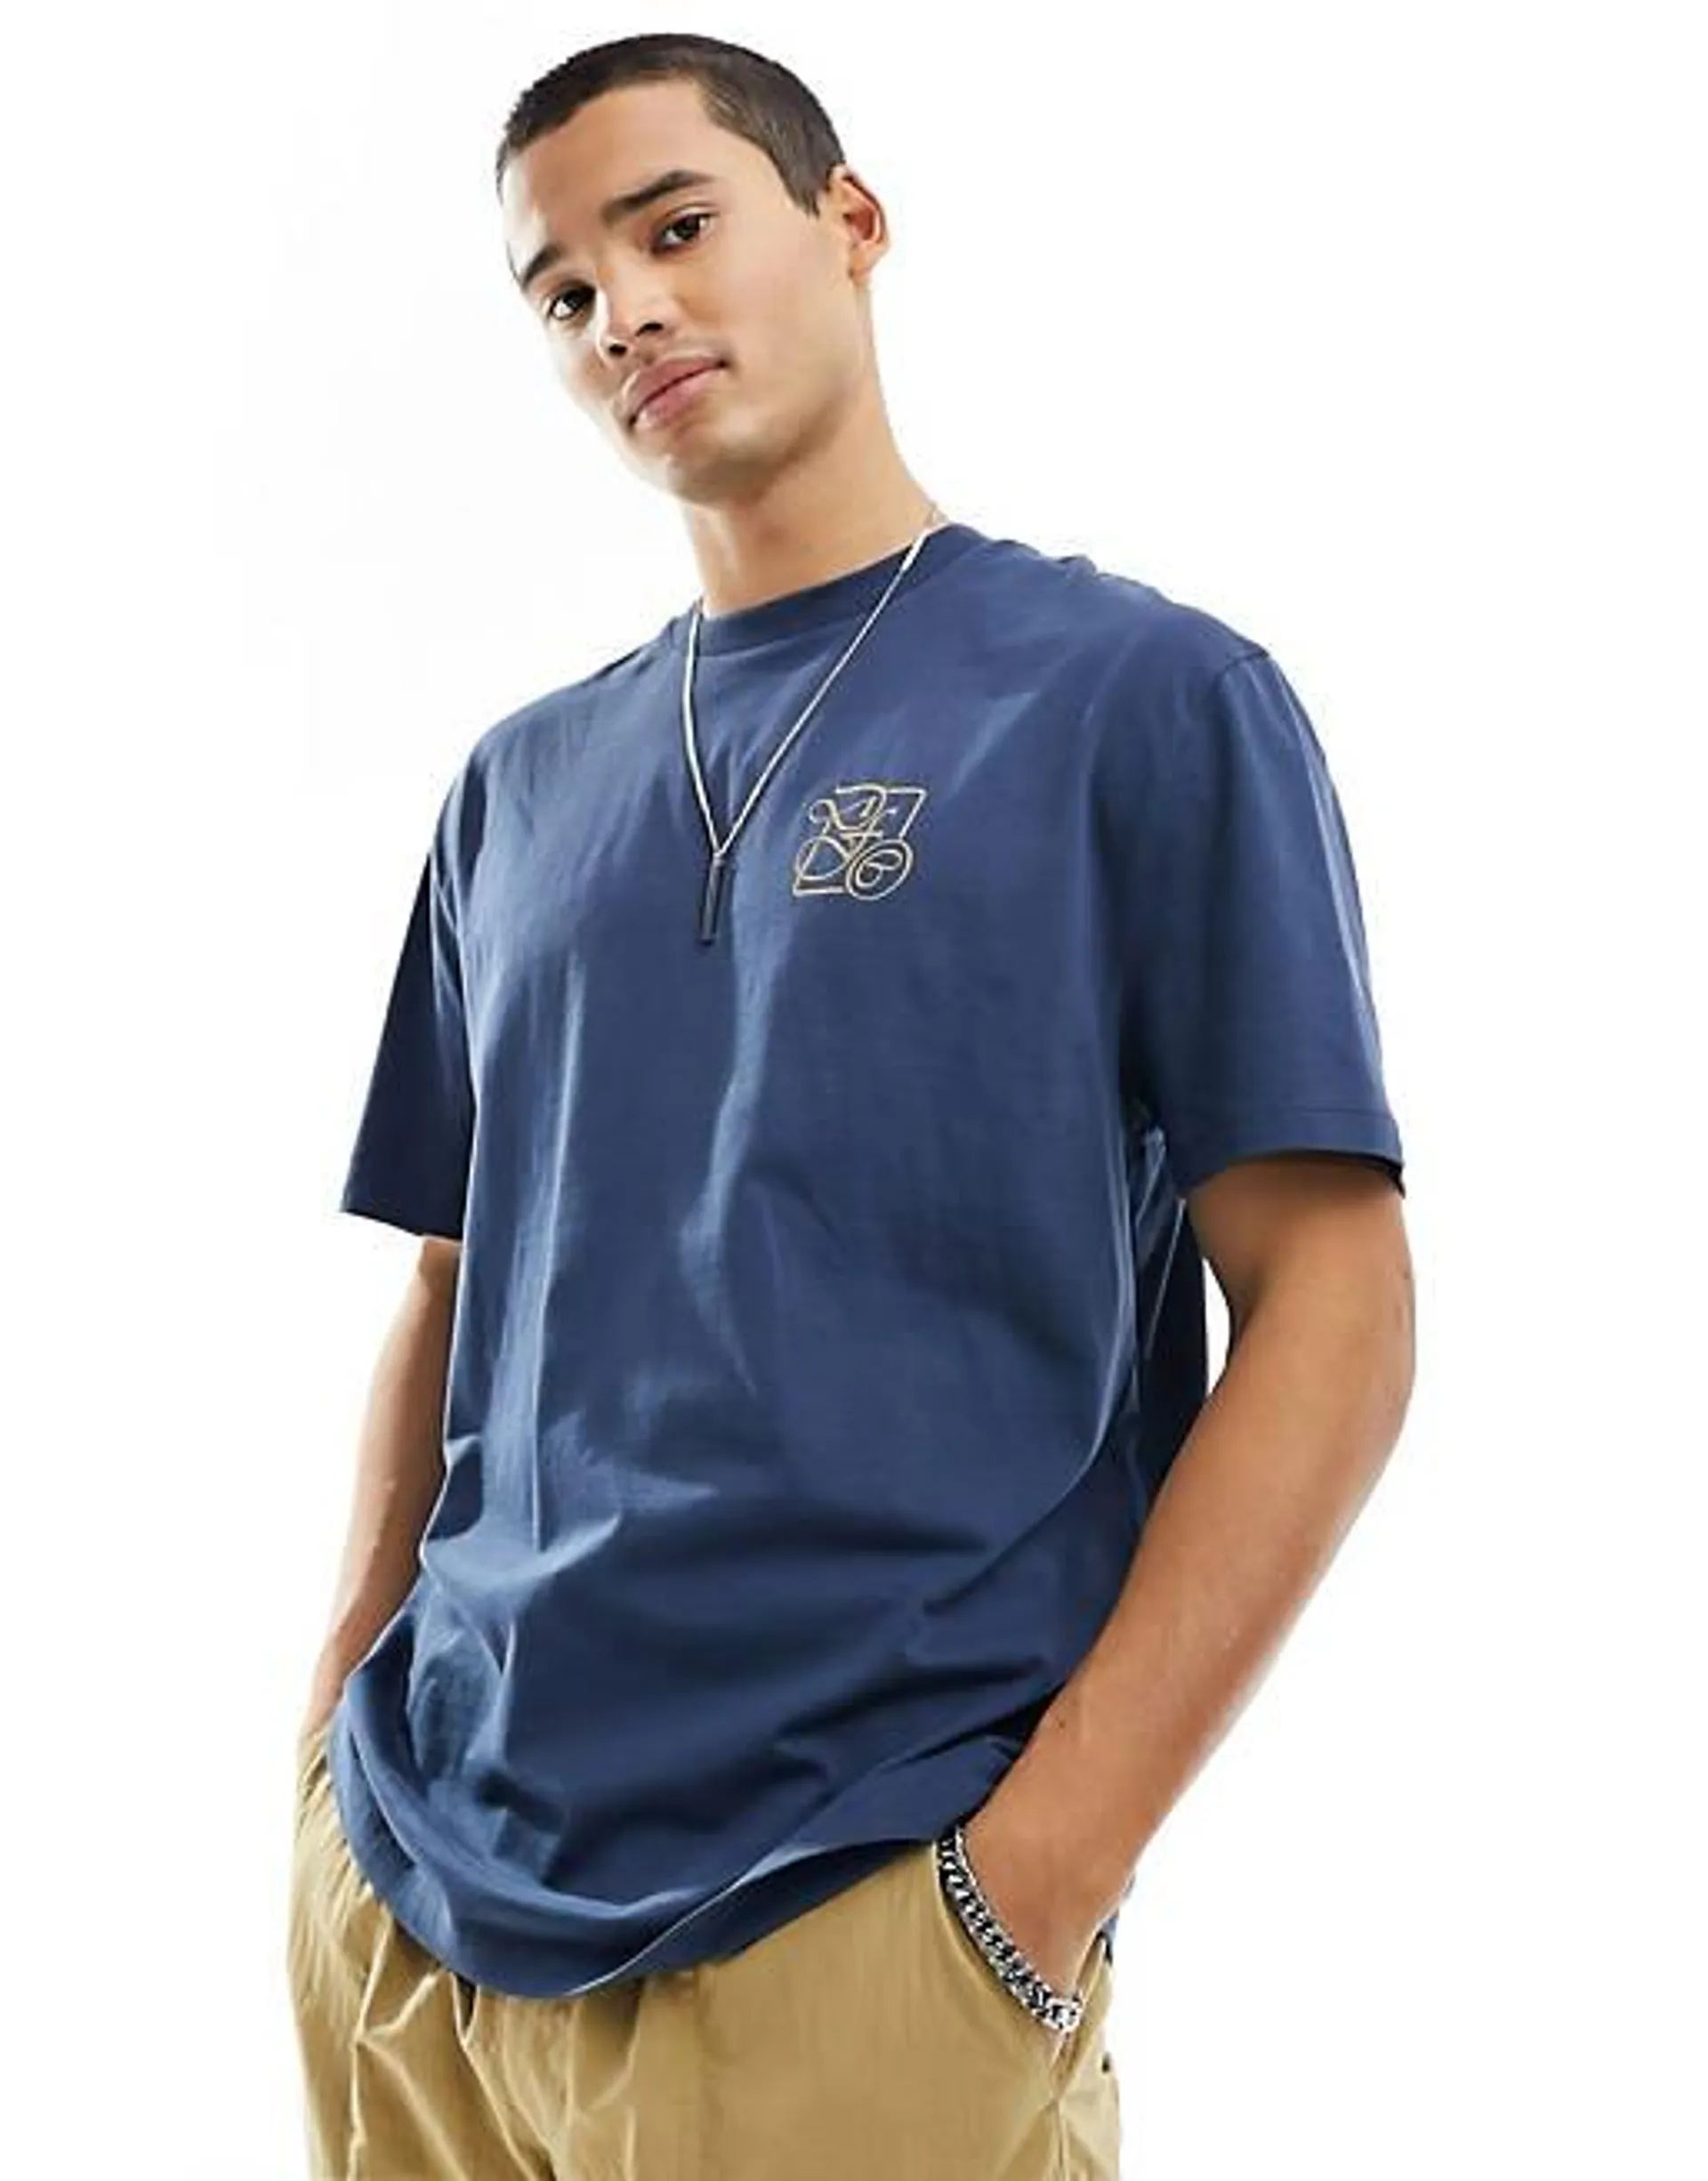 ASOS Dark Future - T-shirt met print op de borst en rug in marineblauw